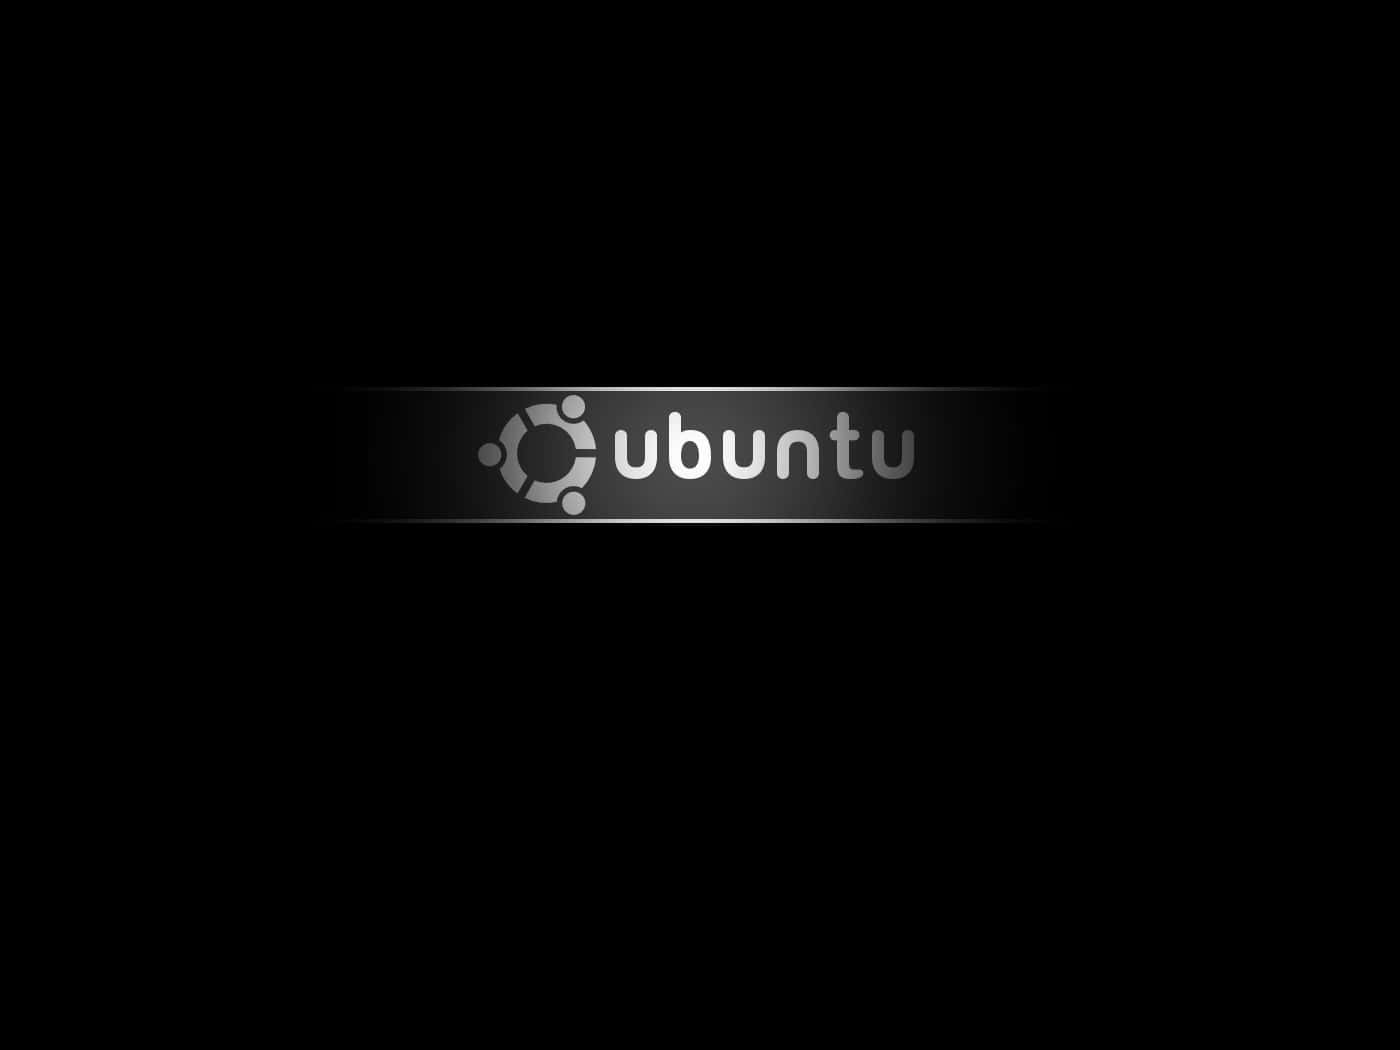 Einschwarzer Hintergrund Mit Dem Wort Ubuntu Darauf.